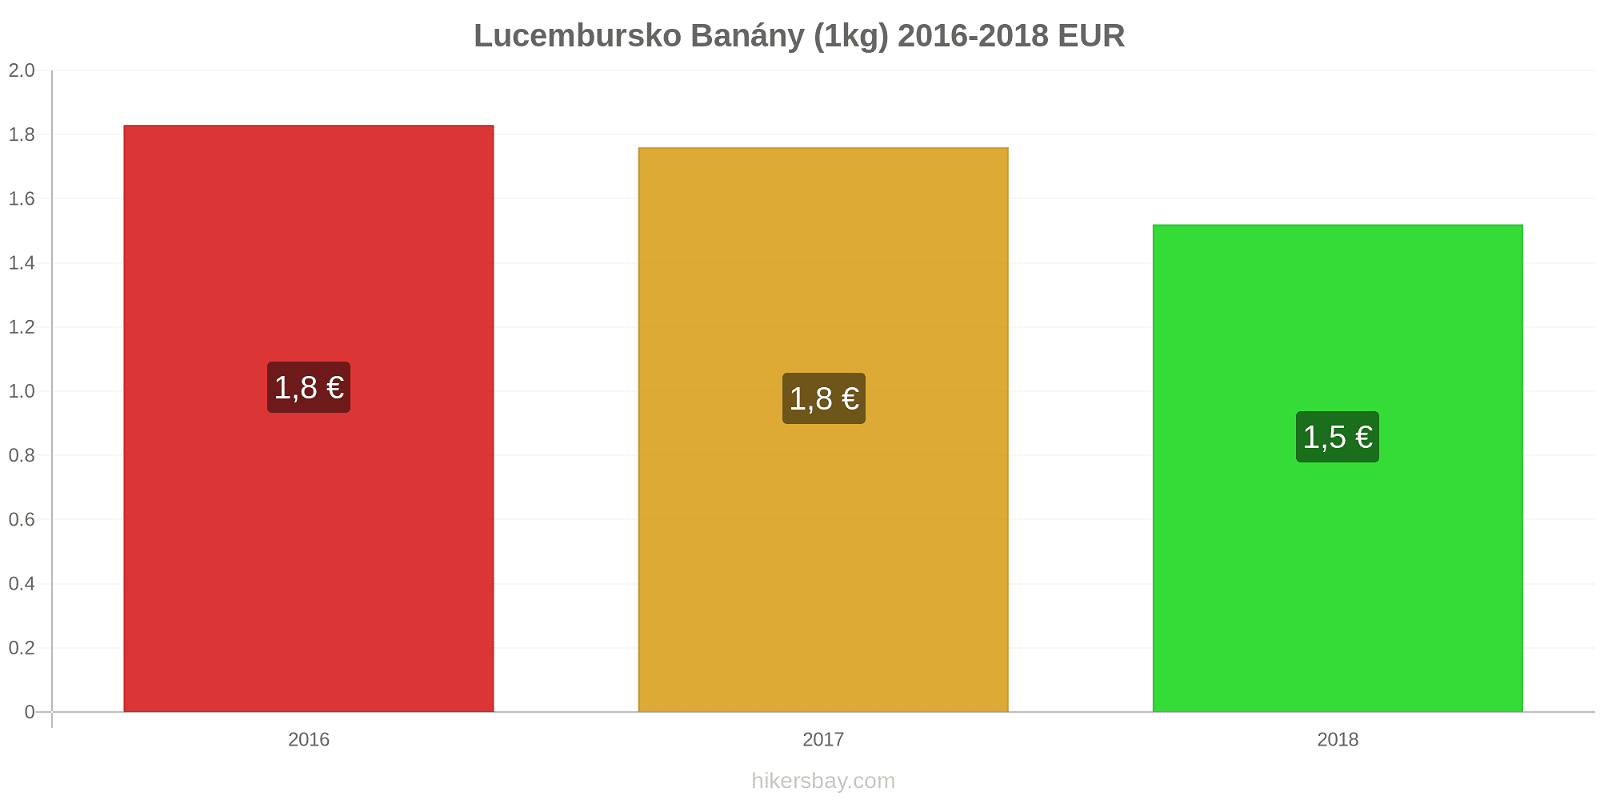 Lucembursko změny cen Banány (1kg) hikersbay.com